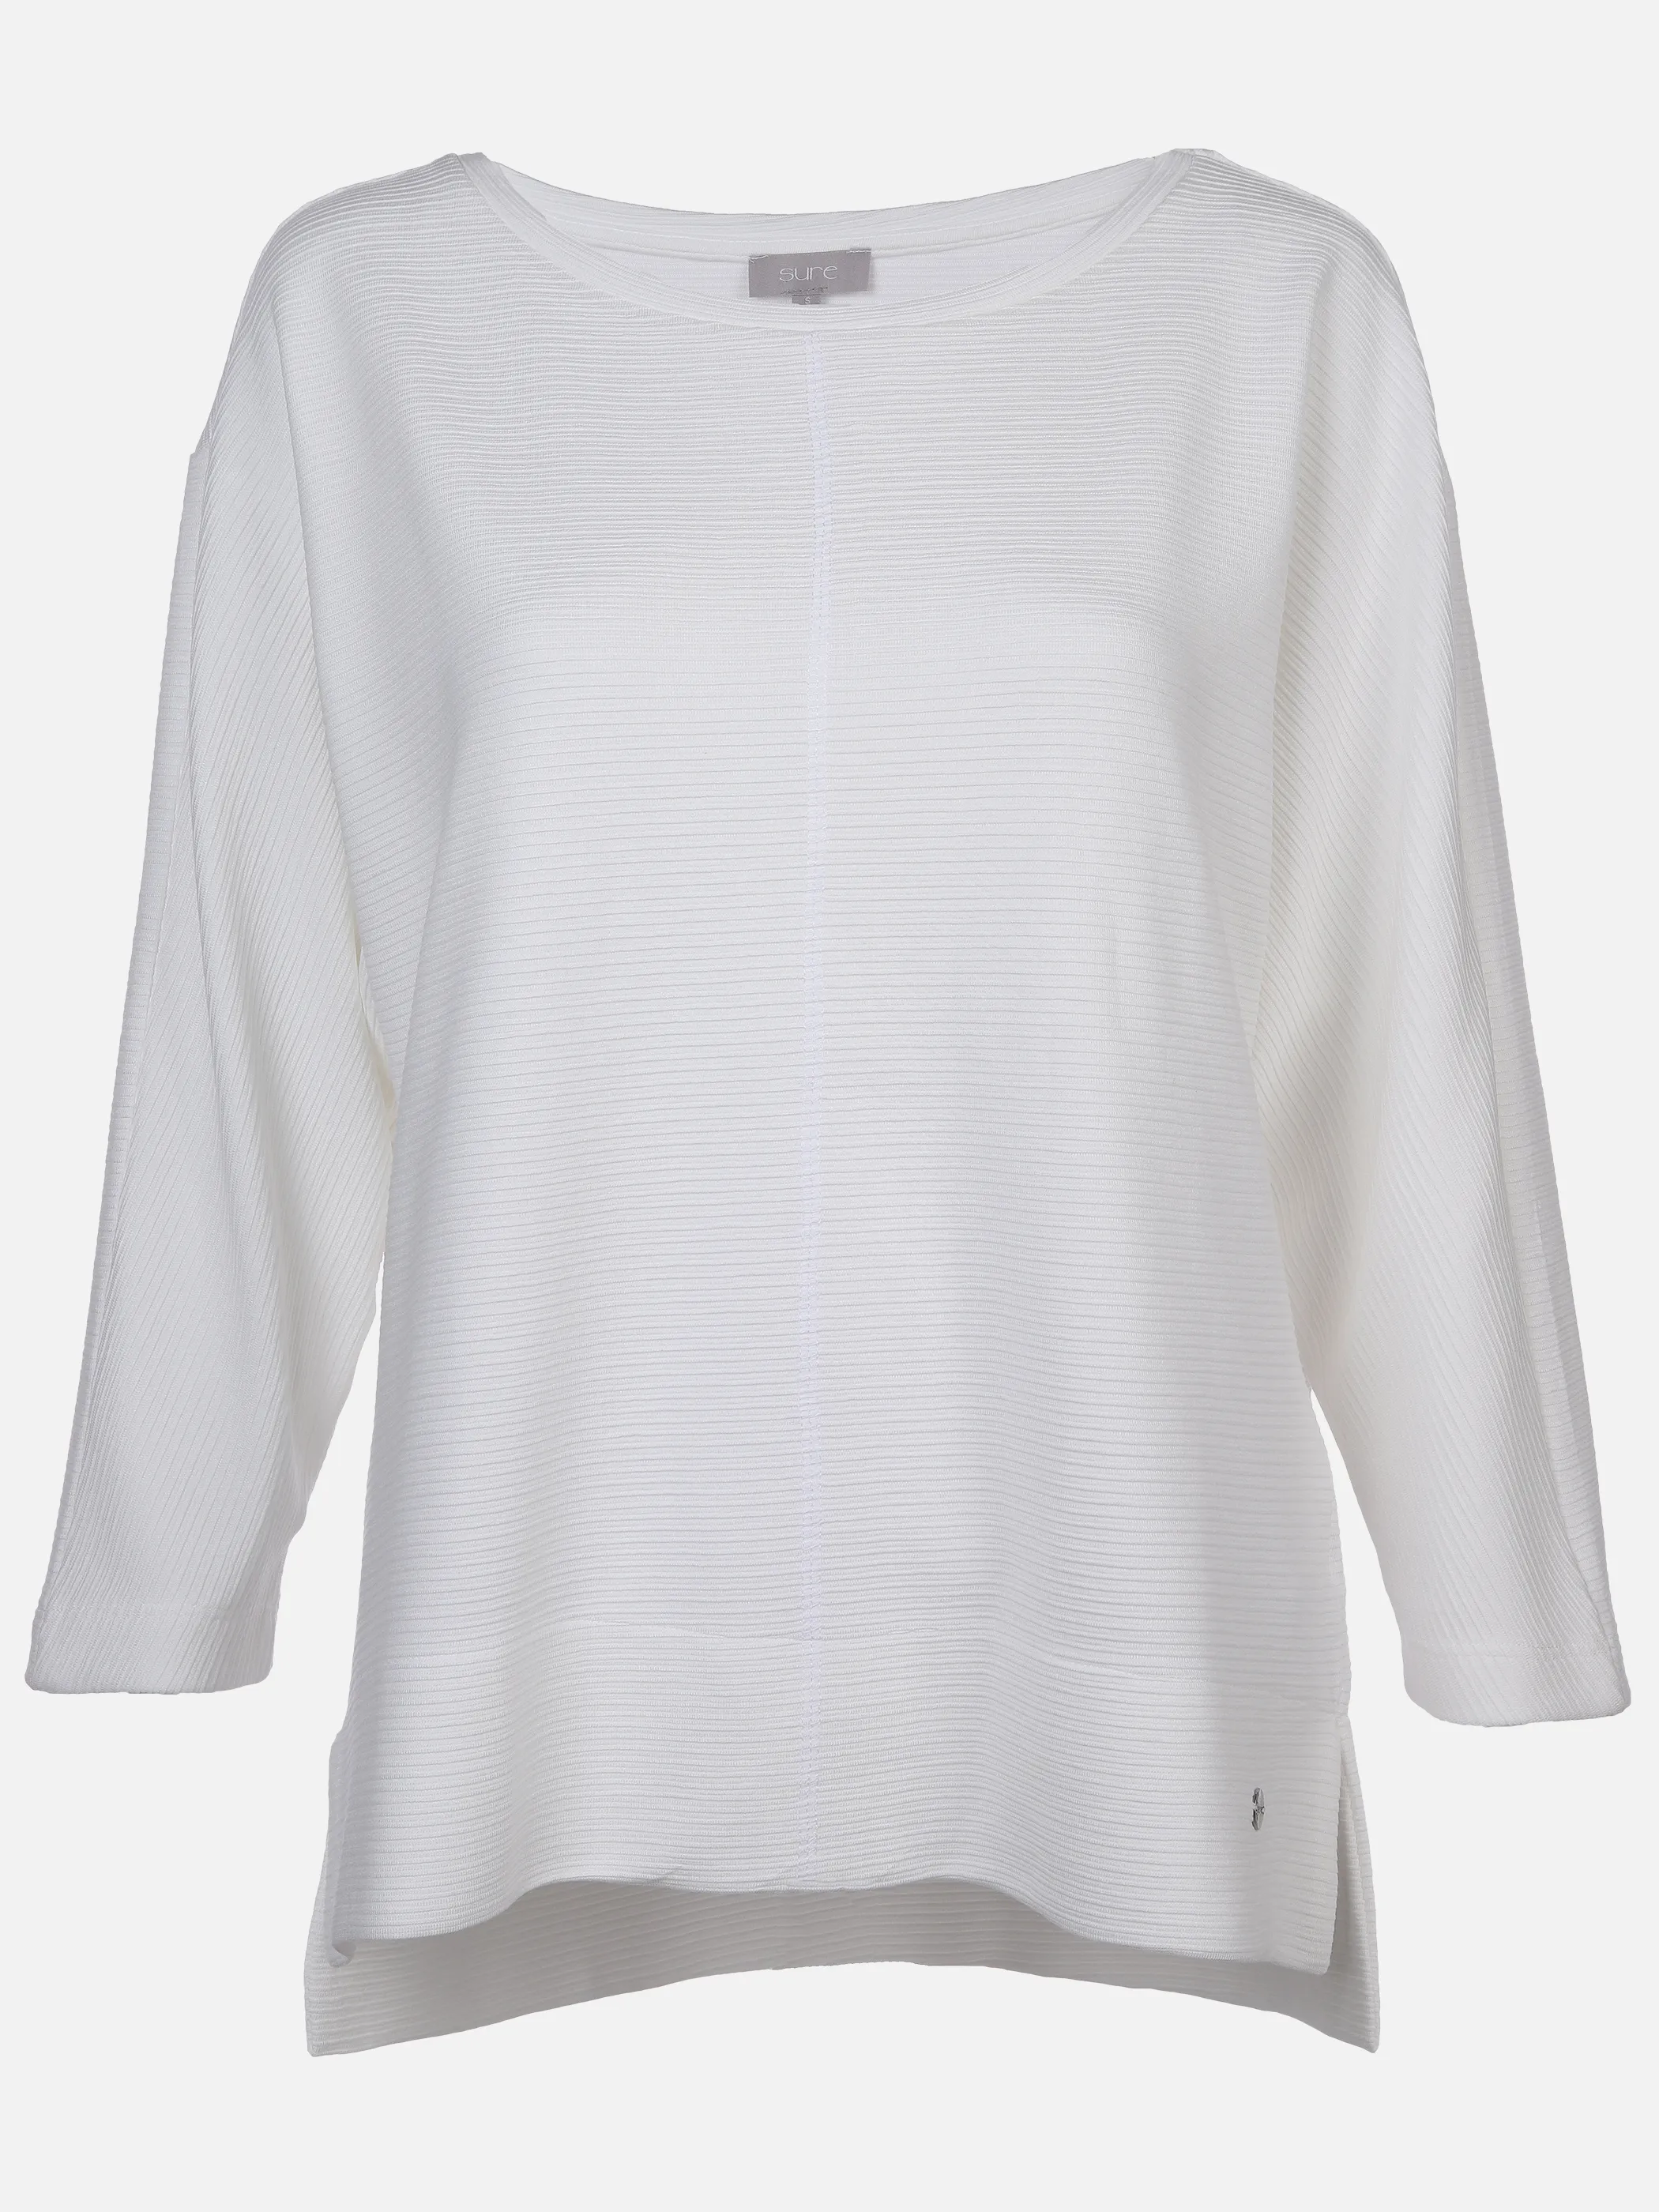 Sure Da-Ottoman-Jaquard-Shirt Weiß 889315 OFFWHITE 1